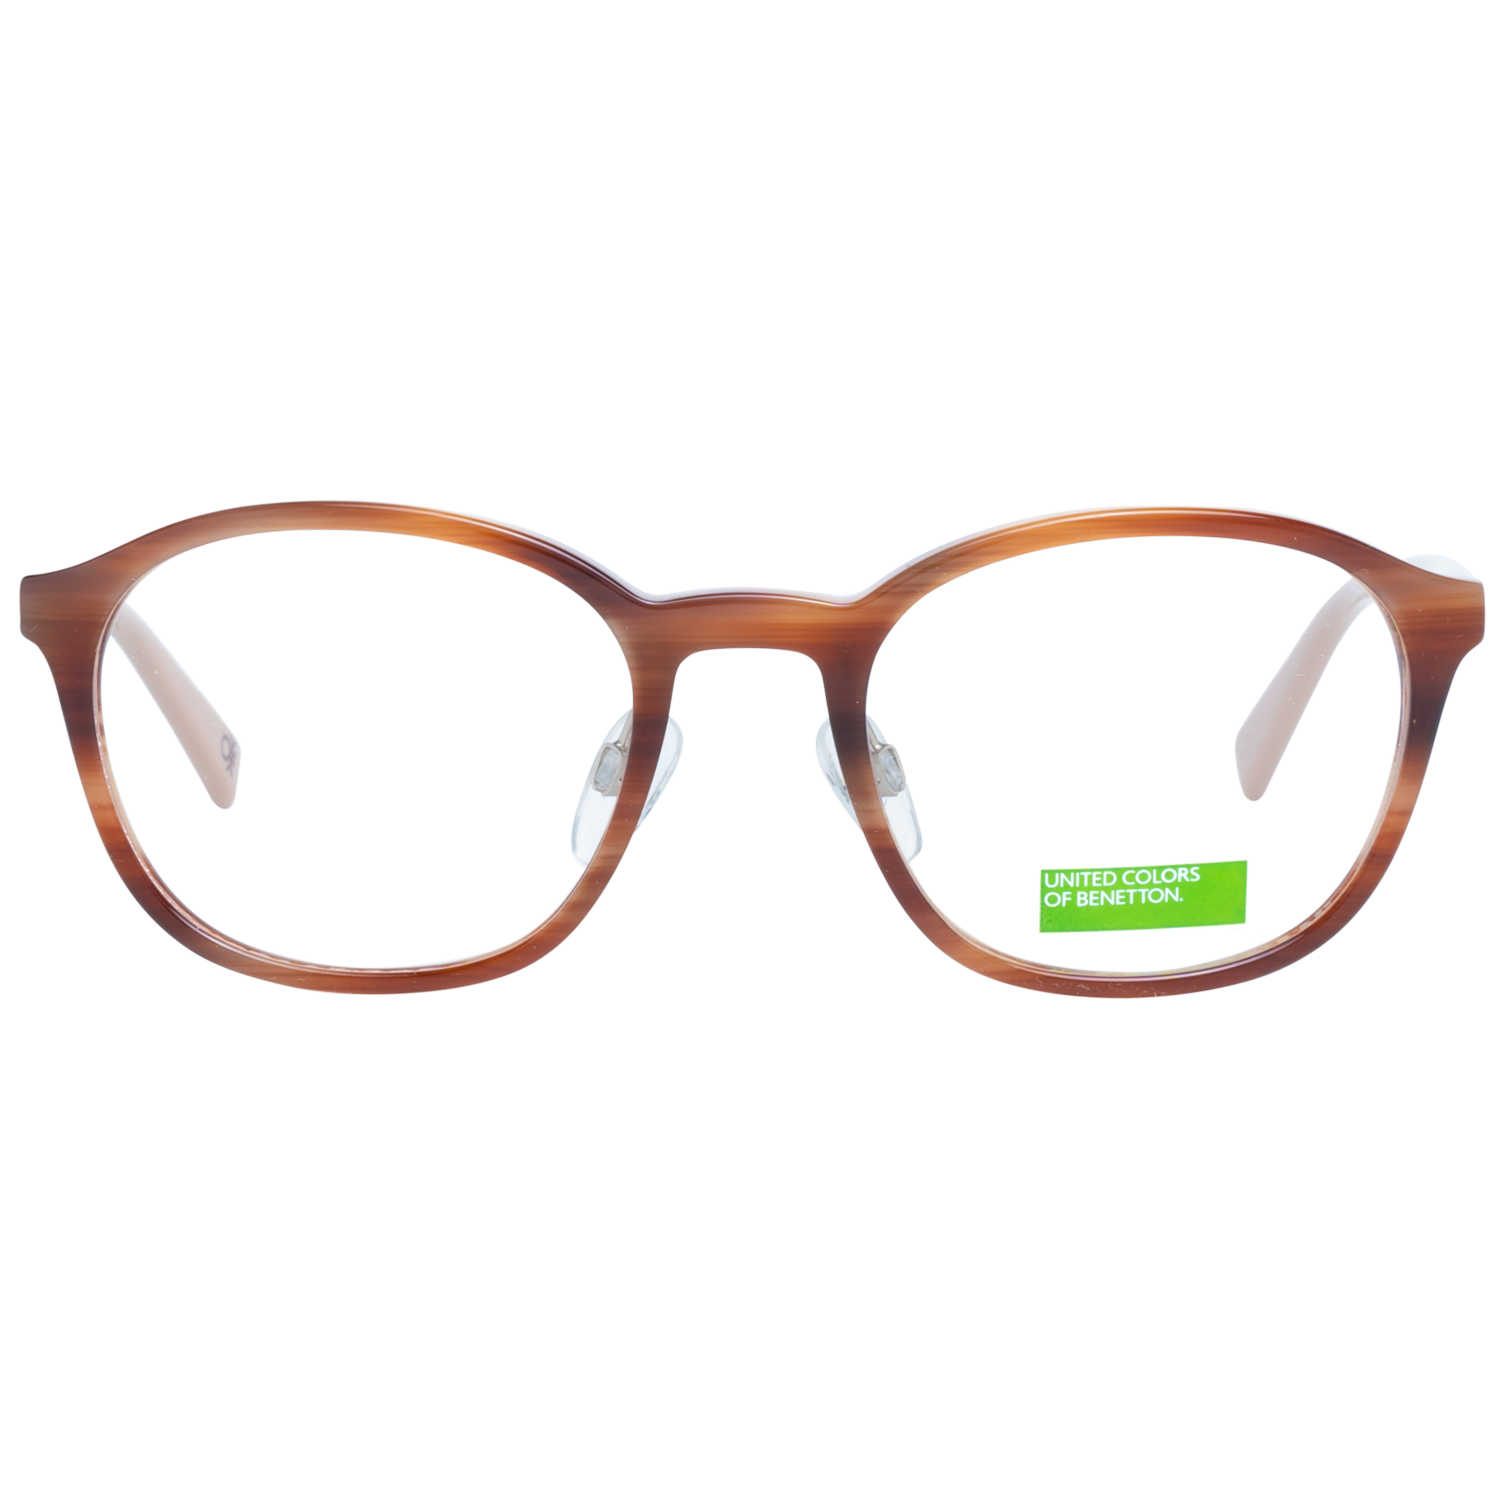 Benetton Frames Benetton Glasses Frames BEO1028 151 49 Eyeglasses Eyewear UK USA Australia 